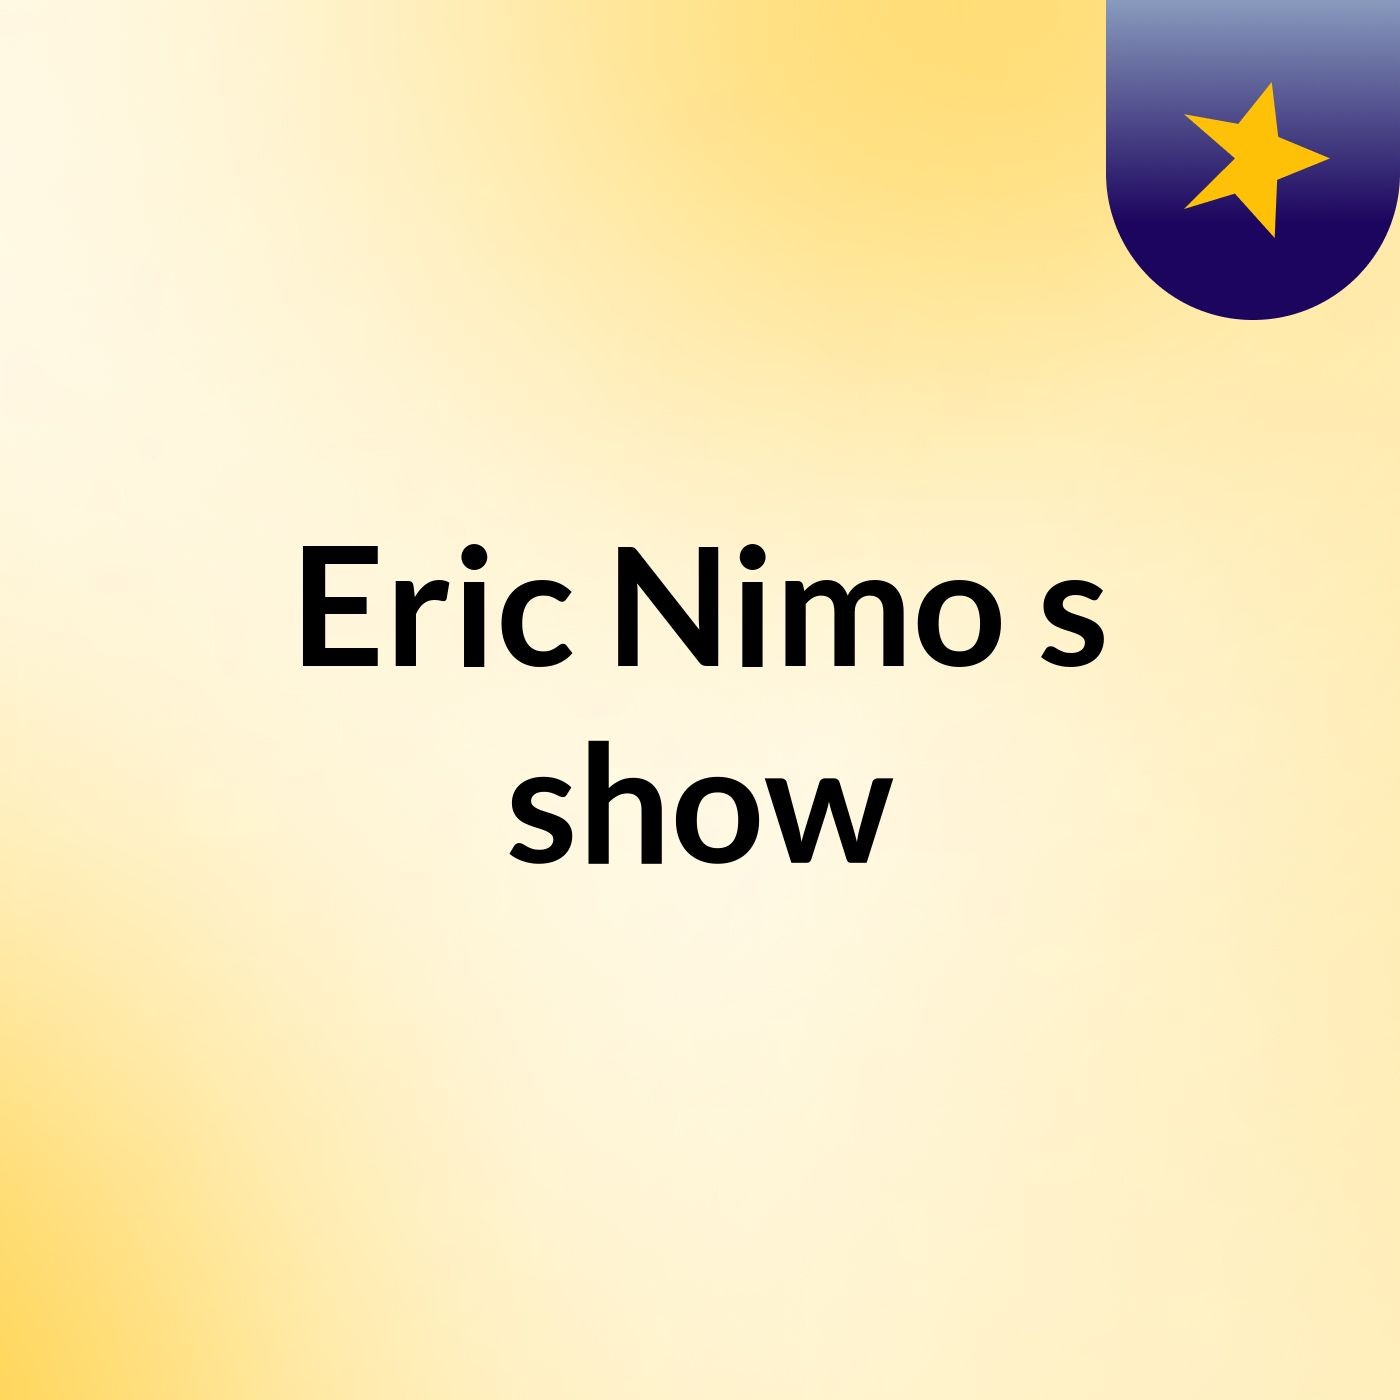 Eric Nimo's show